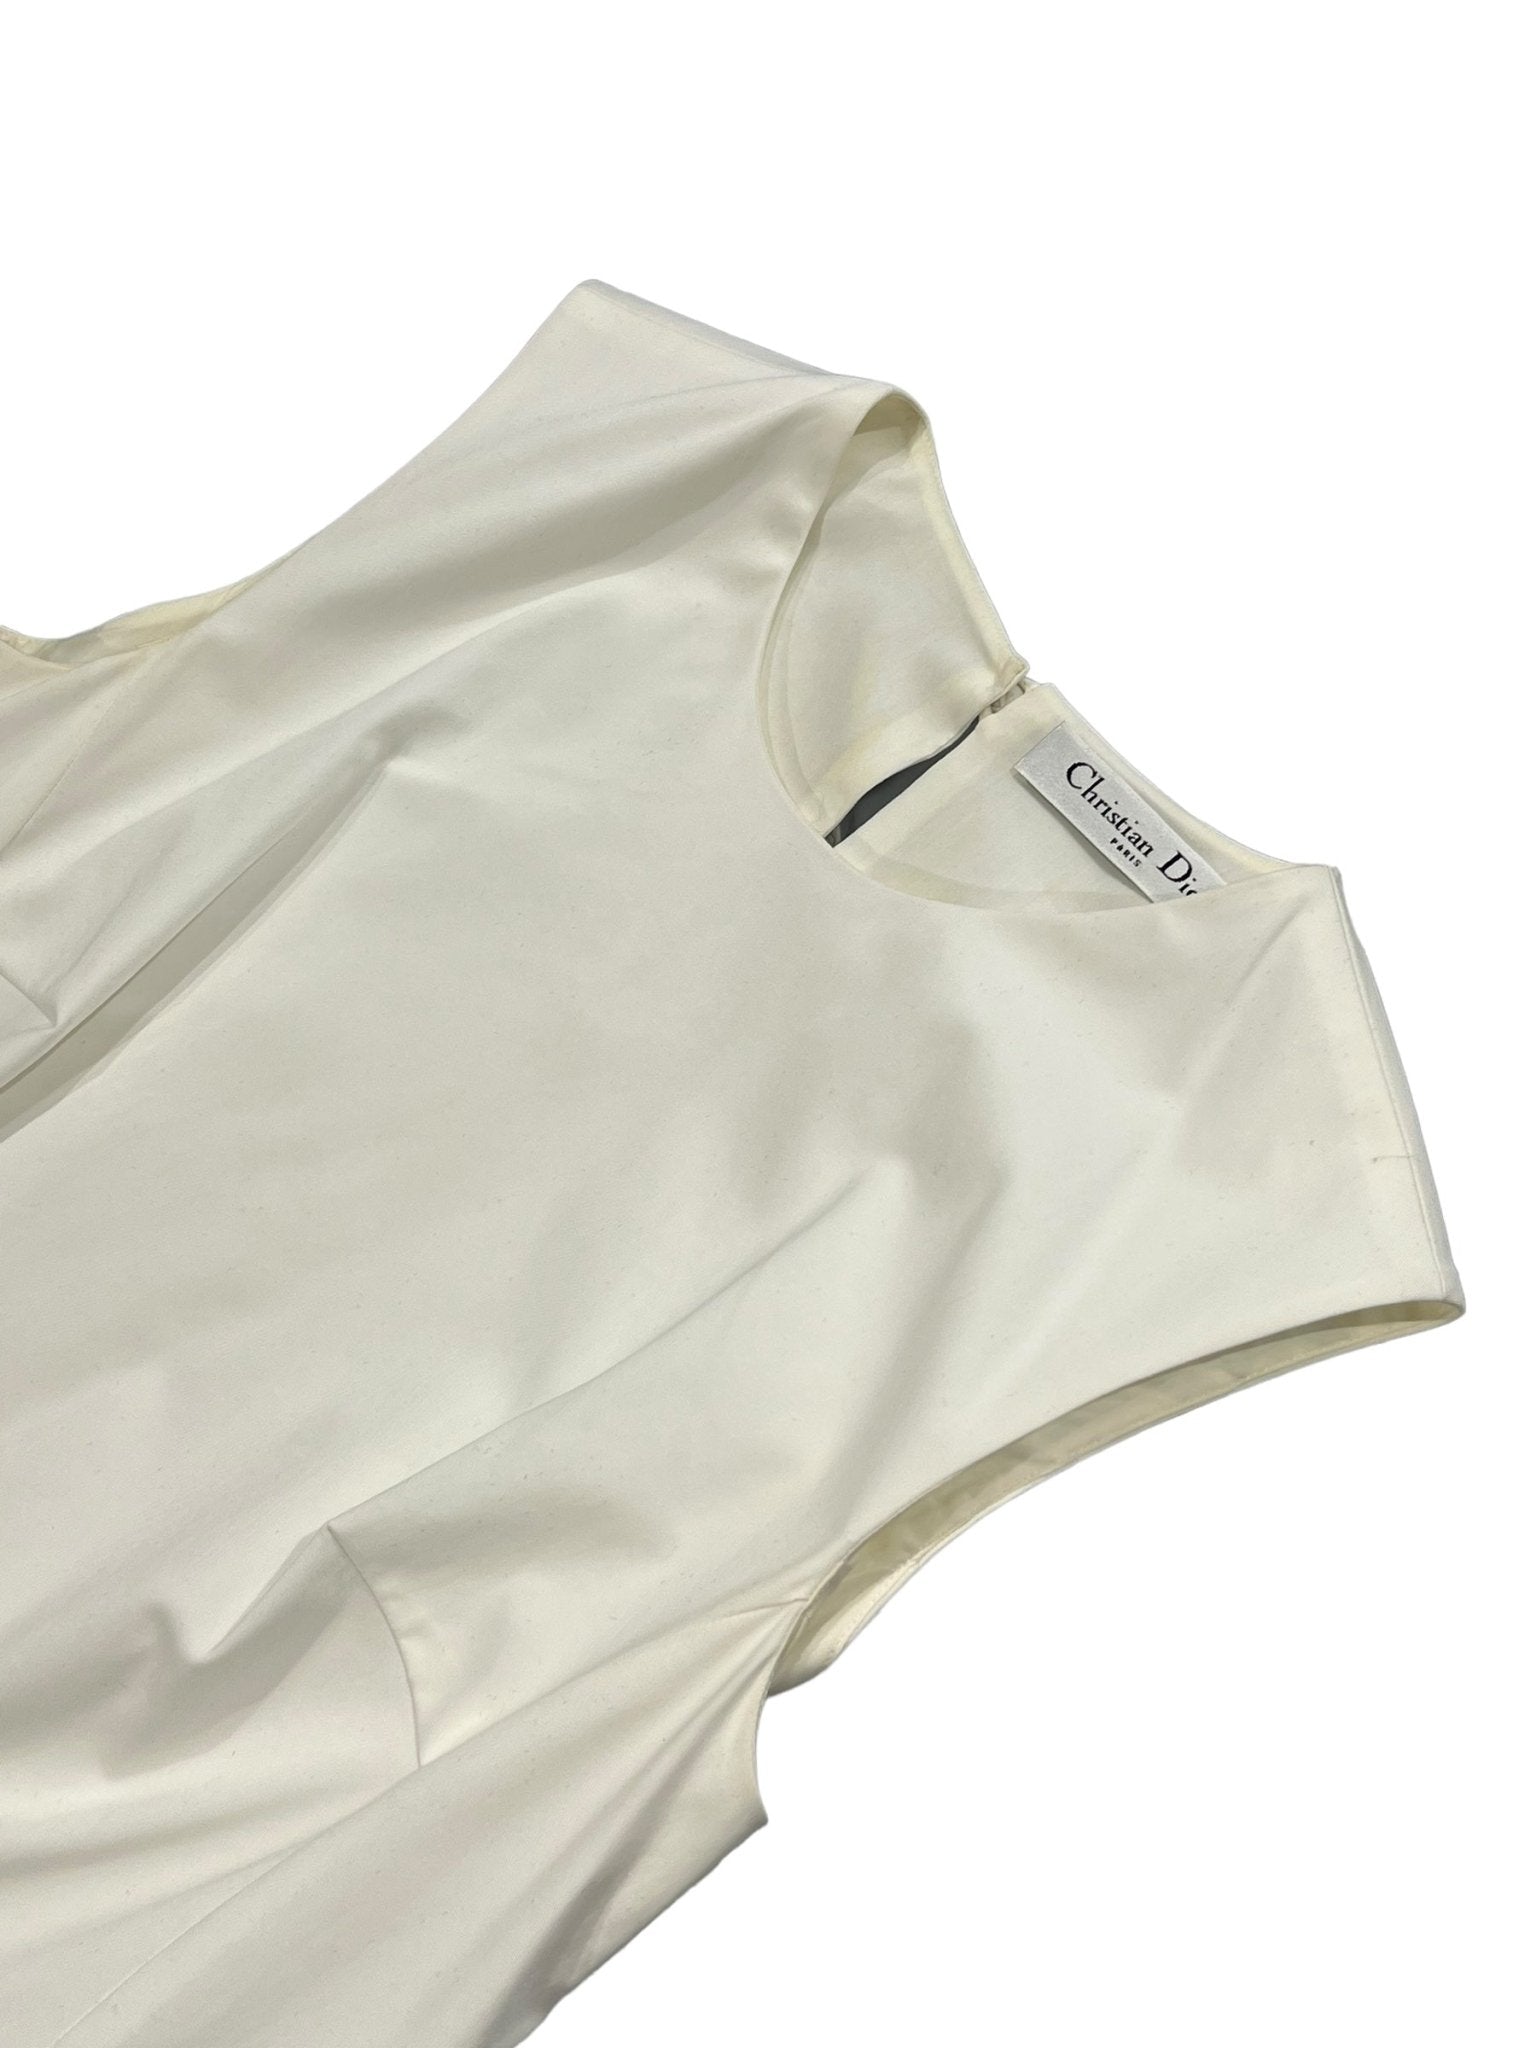 Christian Dior Robe tennis Blanc S - Les Folies d&